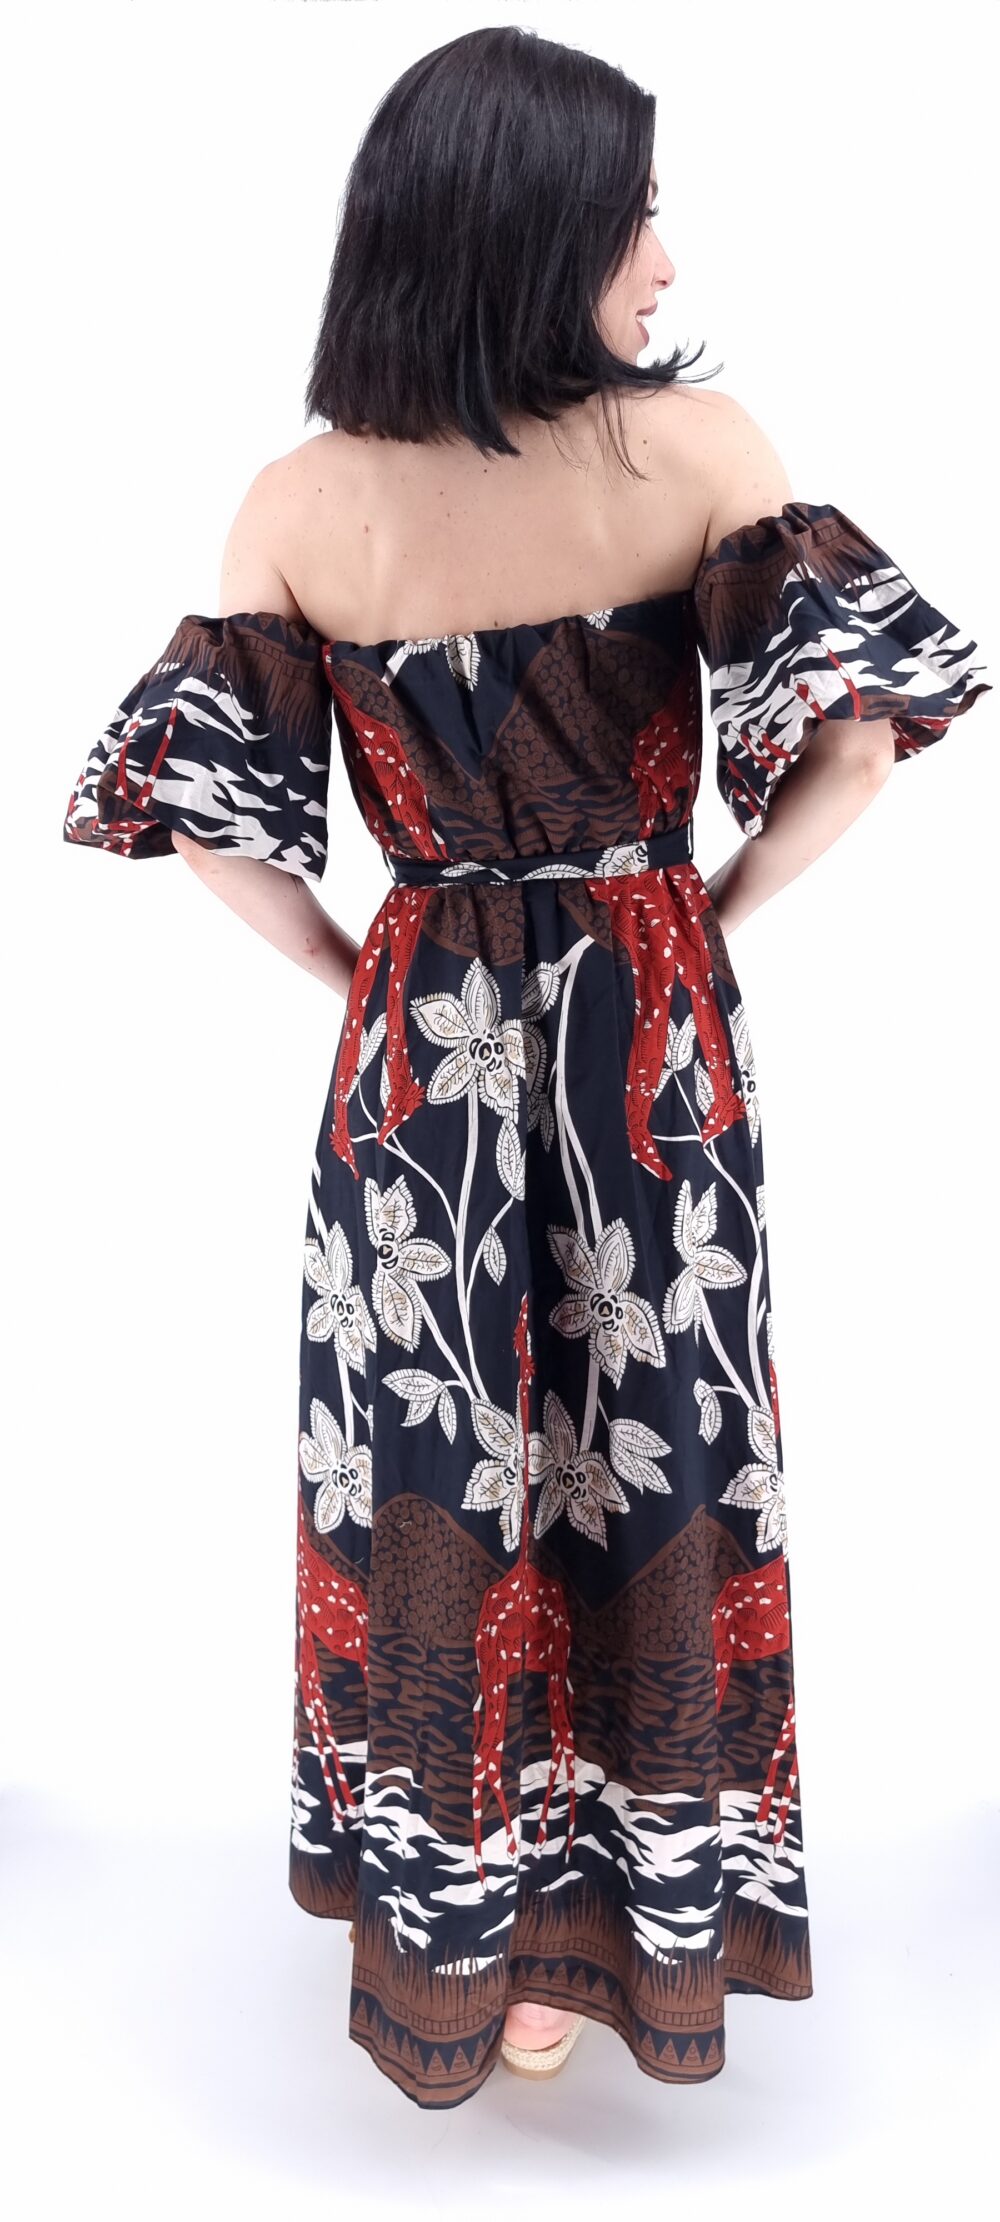 Φόρεμα μακρύ στράπλες με φουσκωτά μανίκια και ιδιαίτερο μοτίβο μαύρο κεραμυδί